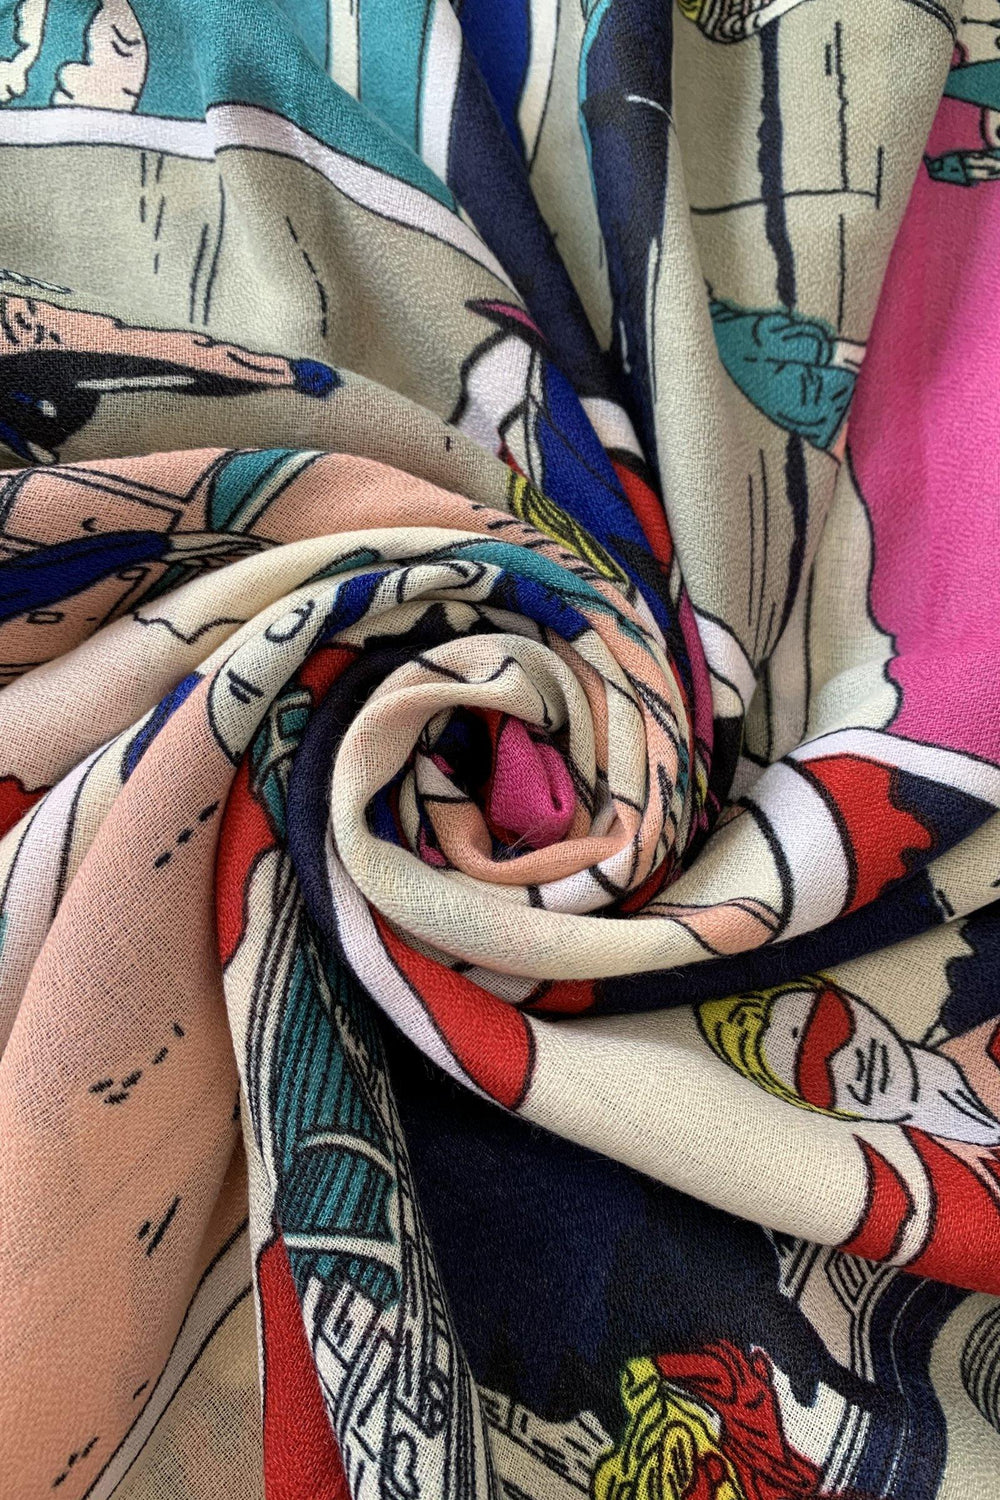 Bavlněná Šála-šátek, 85 cm x 180 cm, Roy Lichtenstein - Pop Art ve stylu 60. let - Multilady.cz